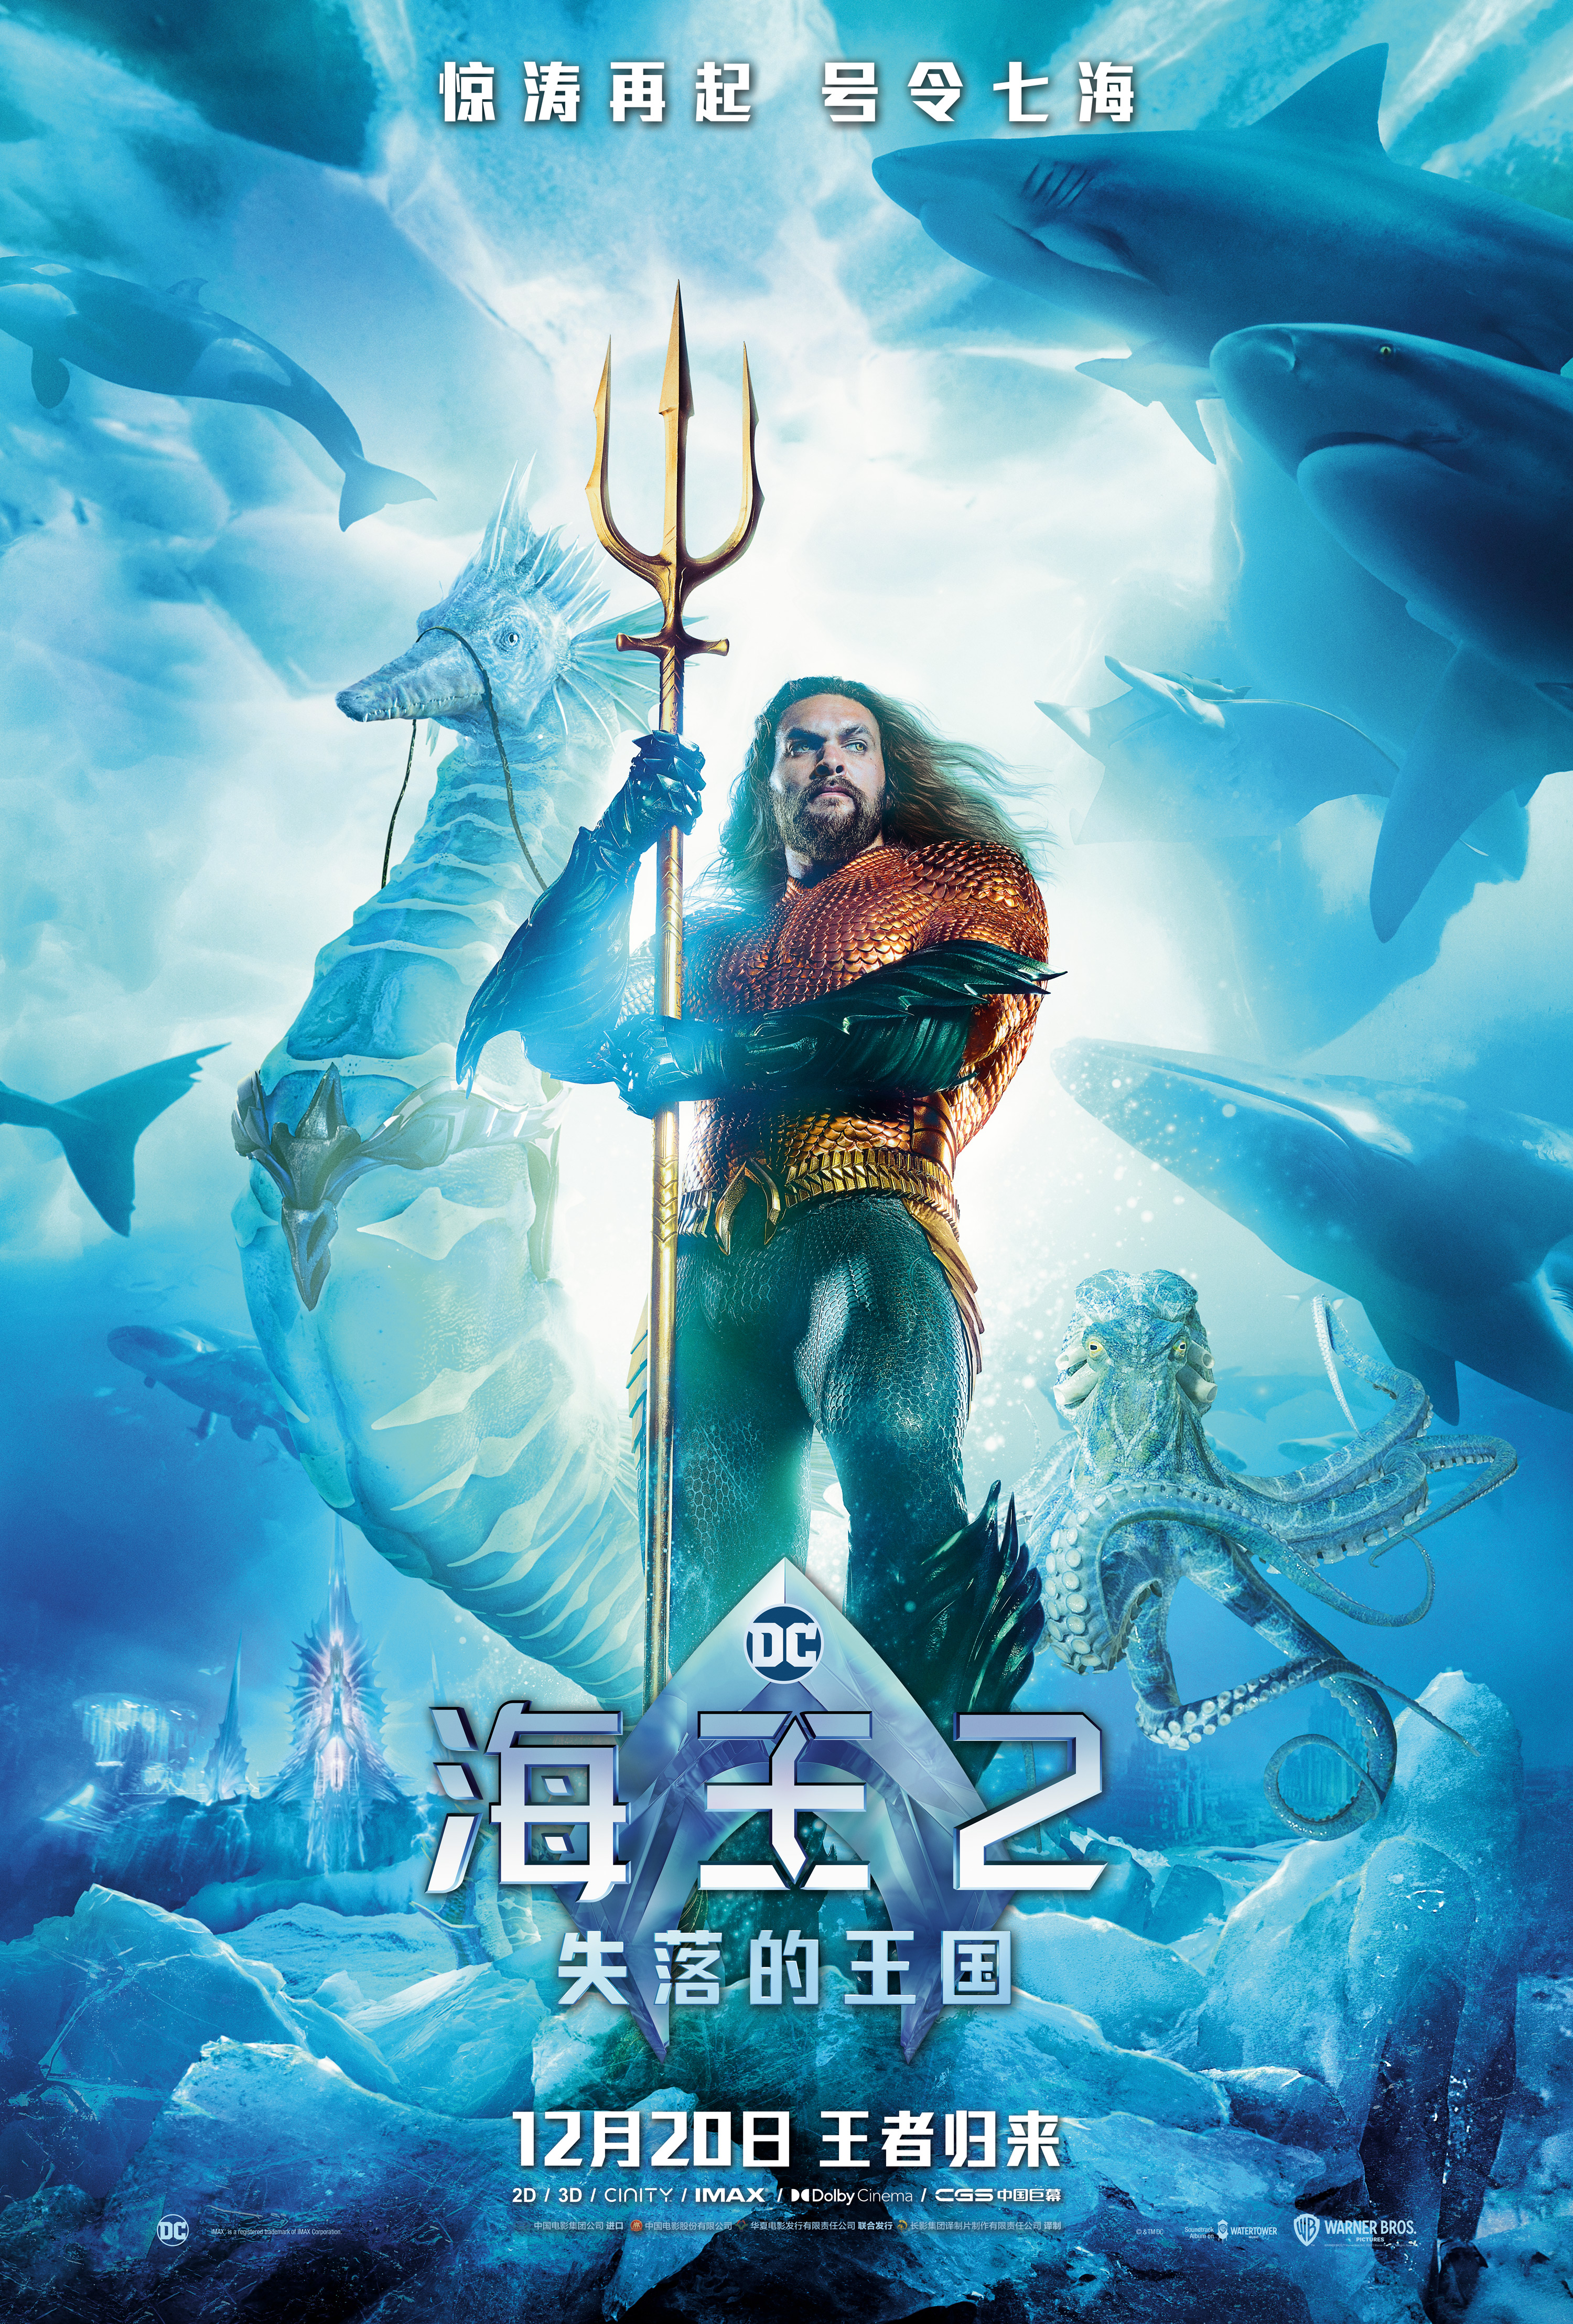 《海王2:失落的王国》曝全新海报预告 温子仁杰森·莫玛官宣来华